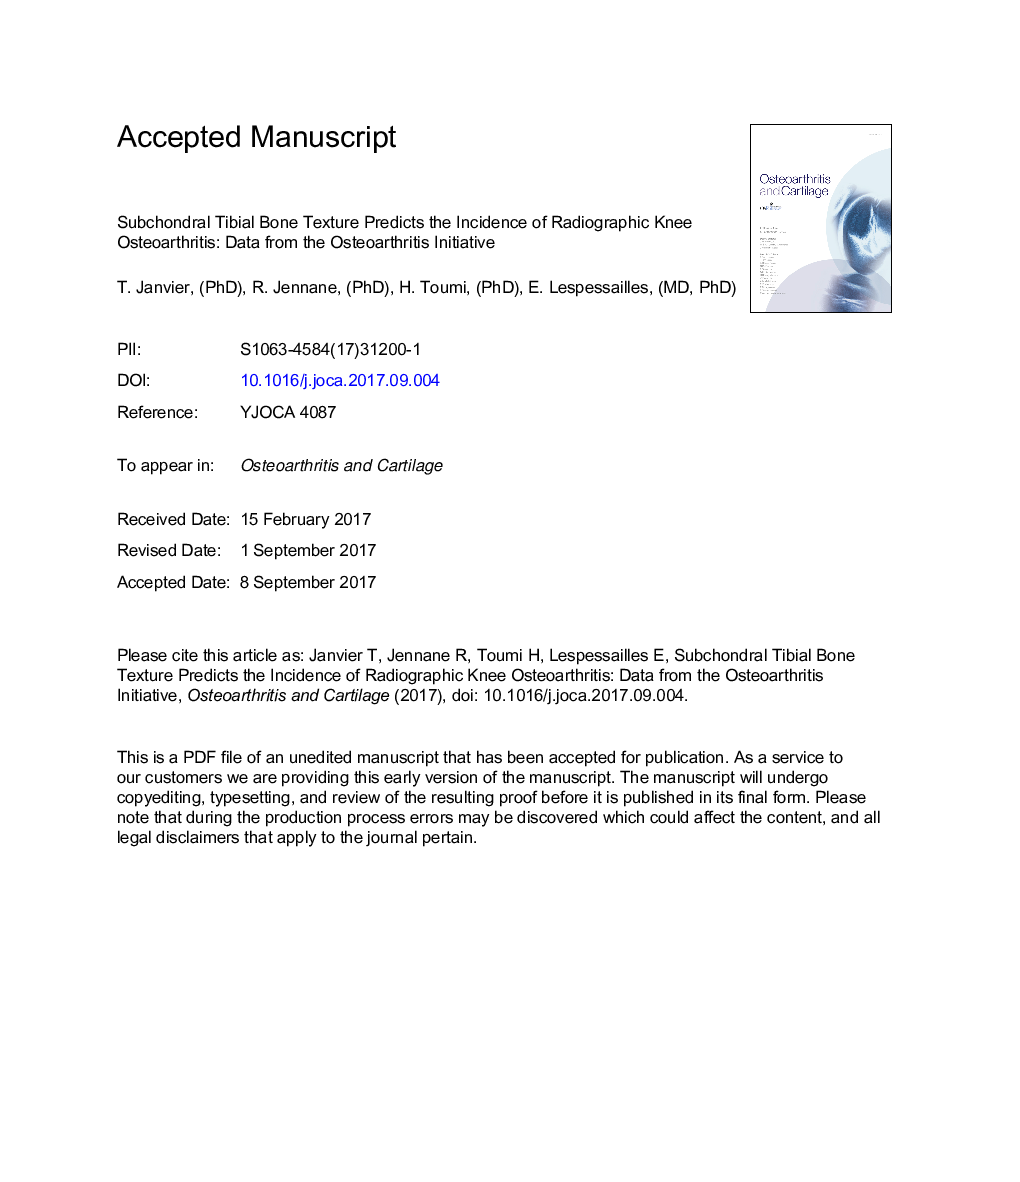 بافت استخوانی تیبای ساب کاناندر، میزان بروز استئوآرتریت زانو رادیوگرافی را پیش بینی می کند: داده ها از ابتلا به استئوآرتریت 